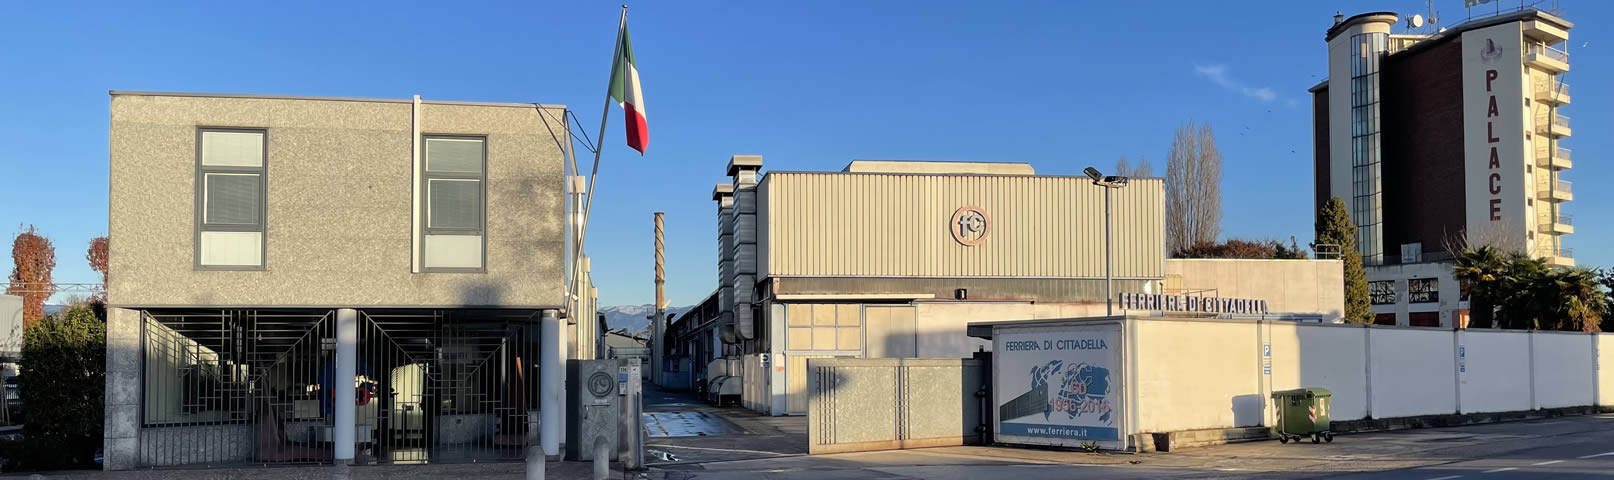 Banner Company | Factories - Ferriera di Cittadella - Italy